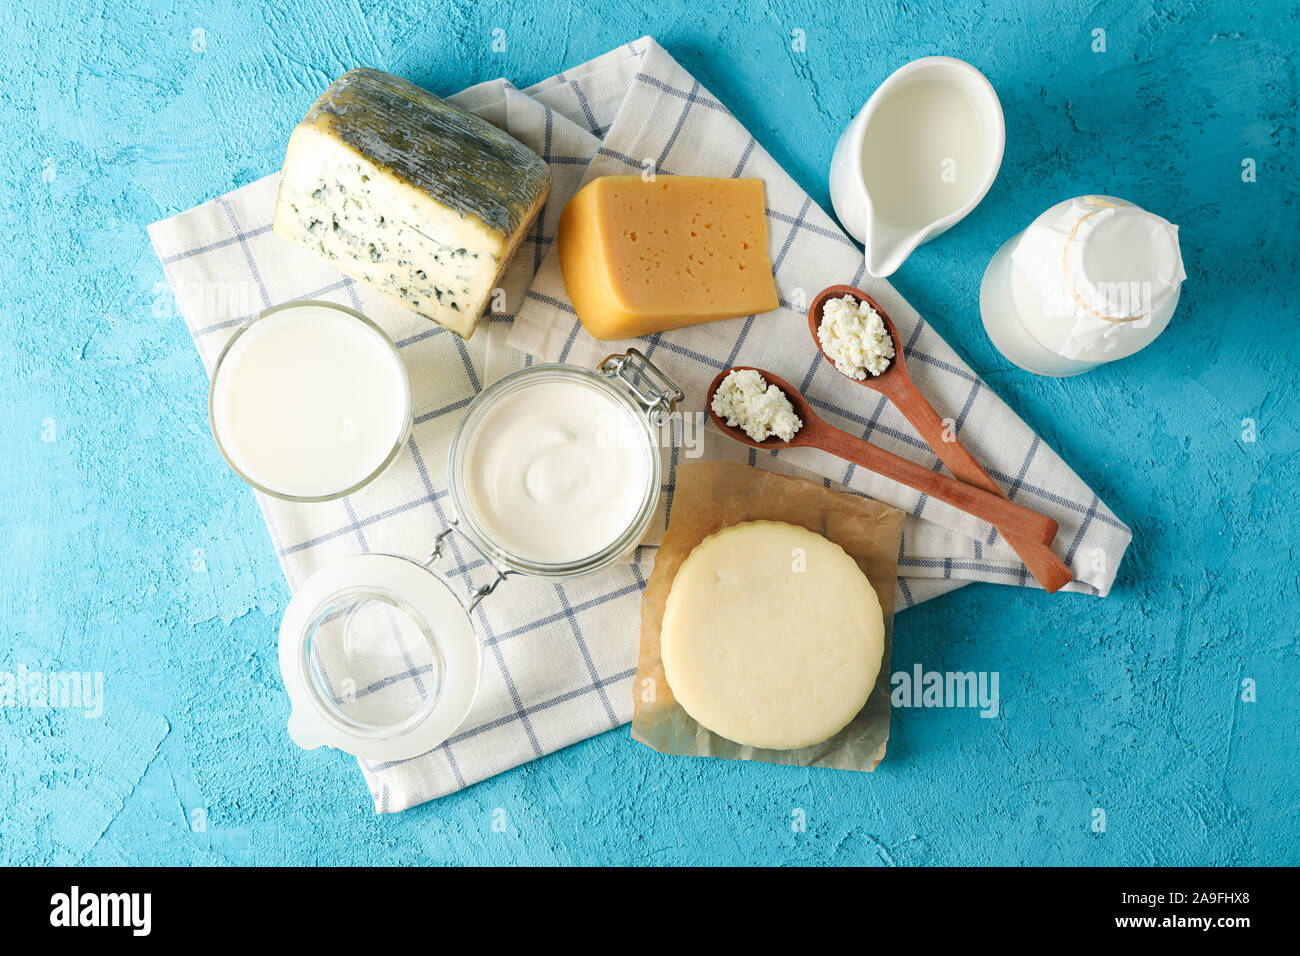 Les produits laitiers frais et cuisine serviette sur fond bleu, vue d'en haut Banque D'Images